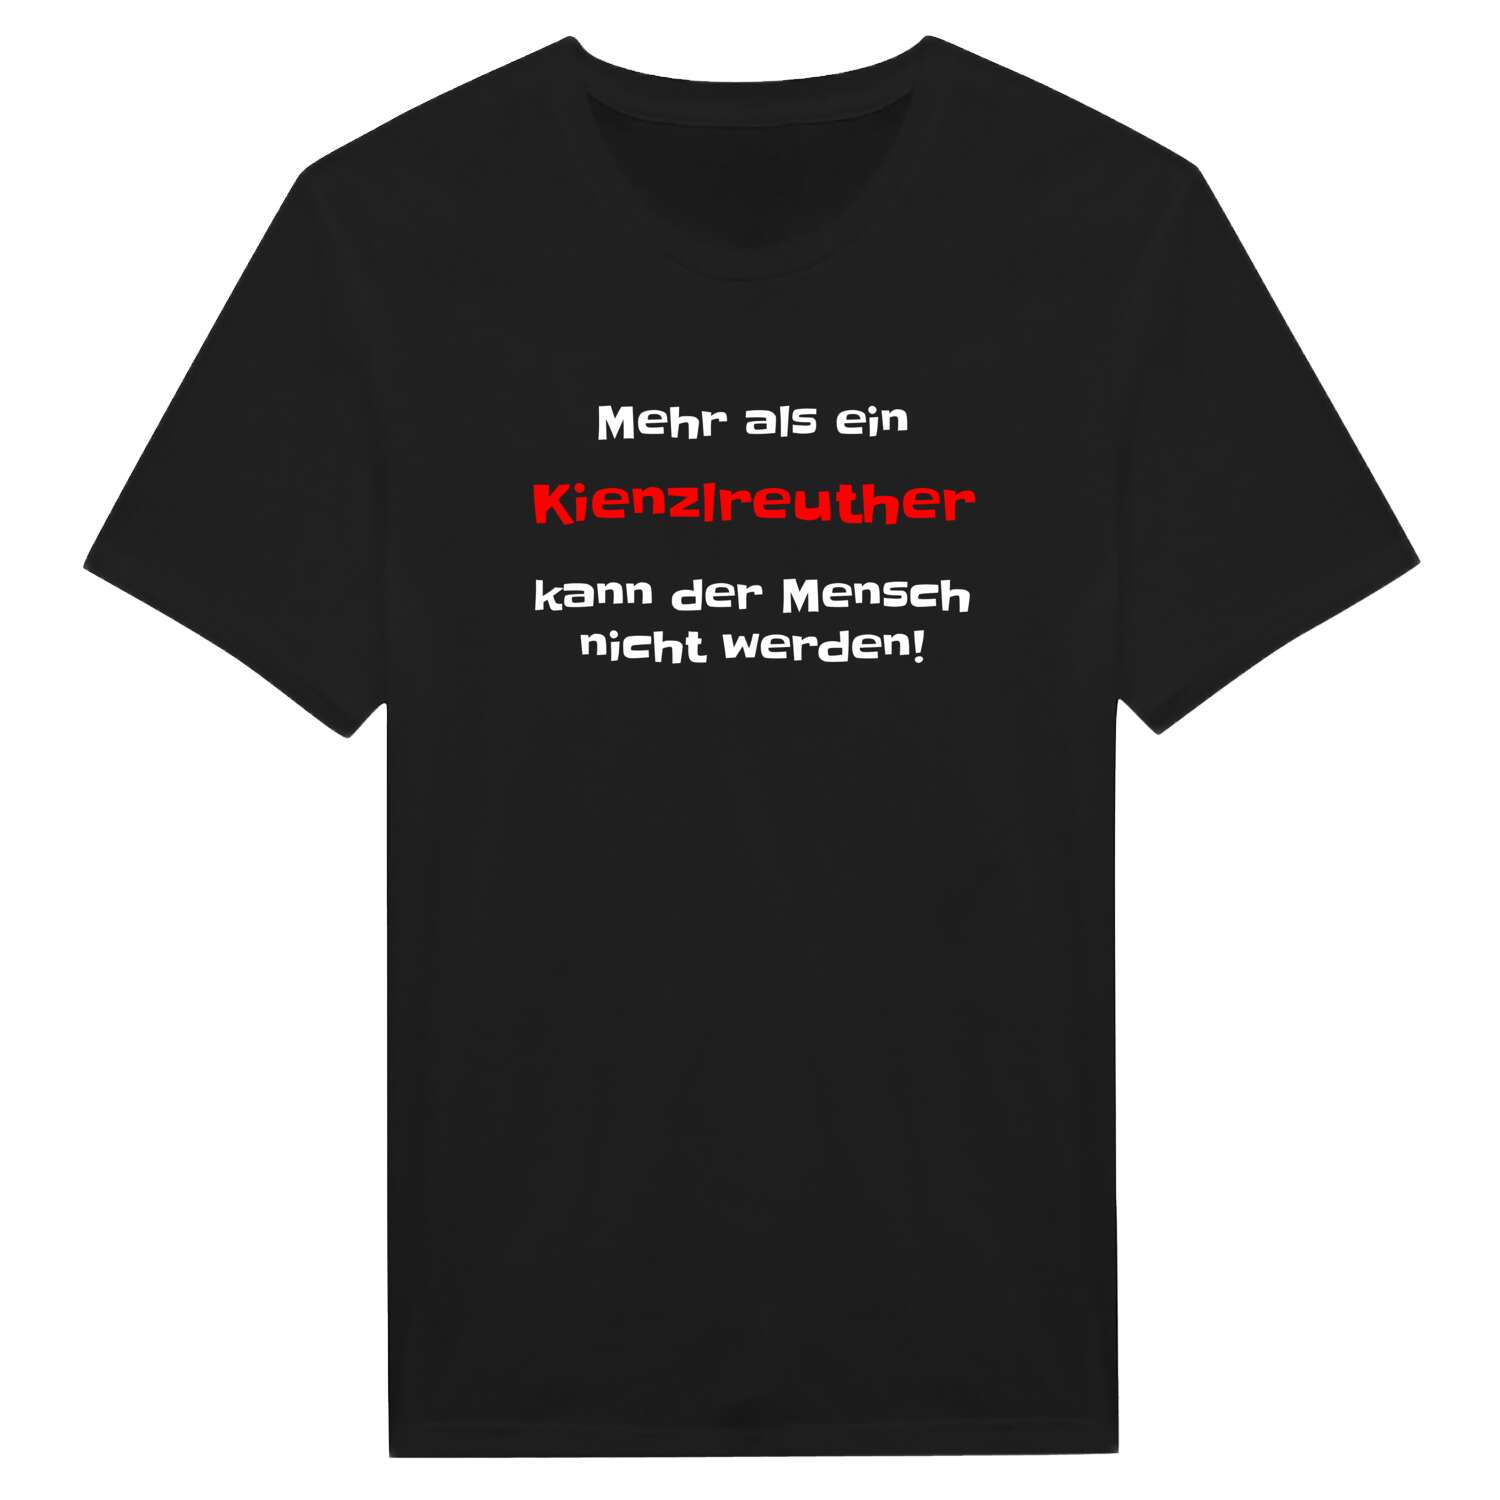 Kienzlreuth T-Shirt »Mehr als ein«